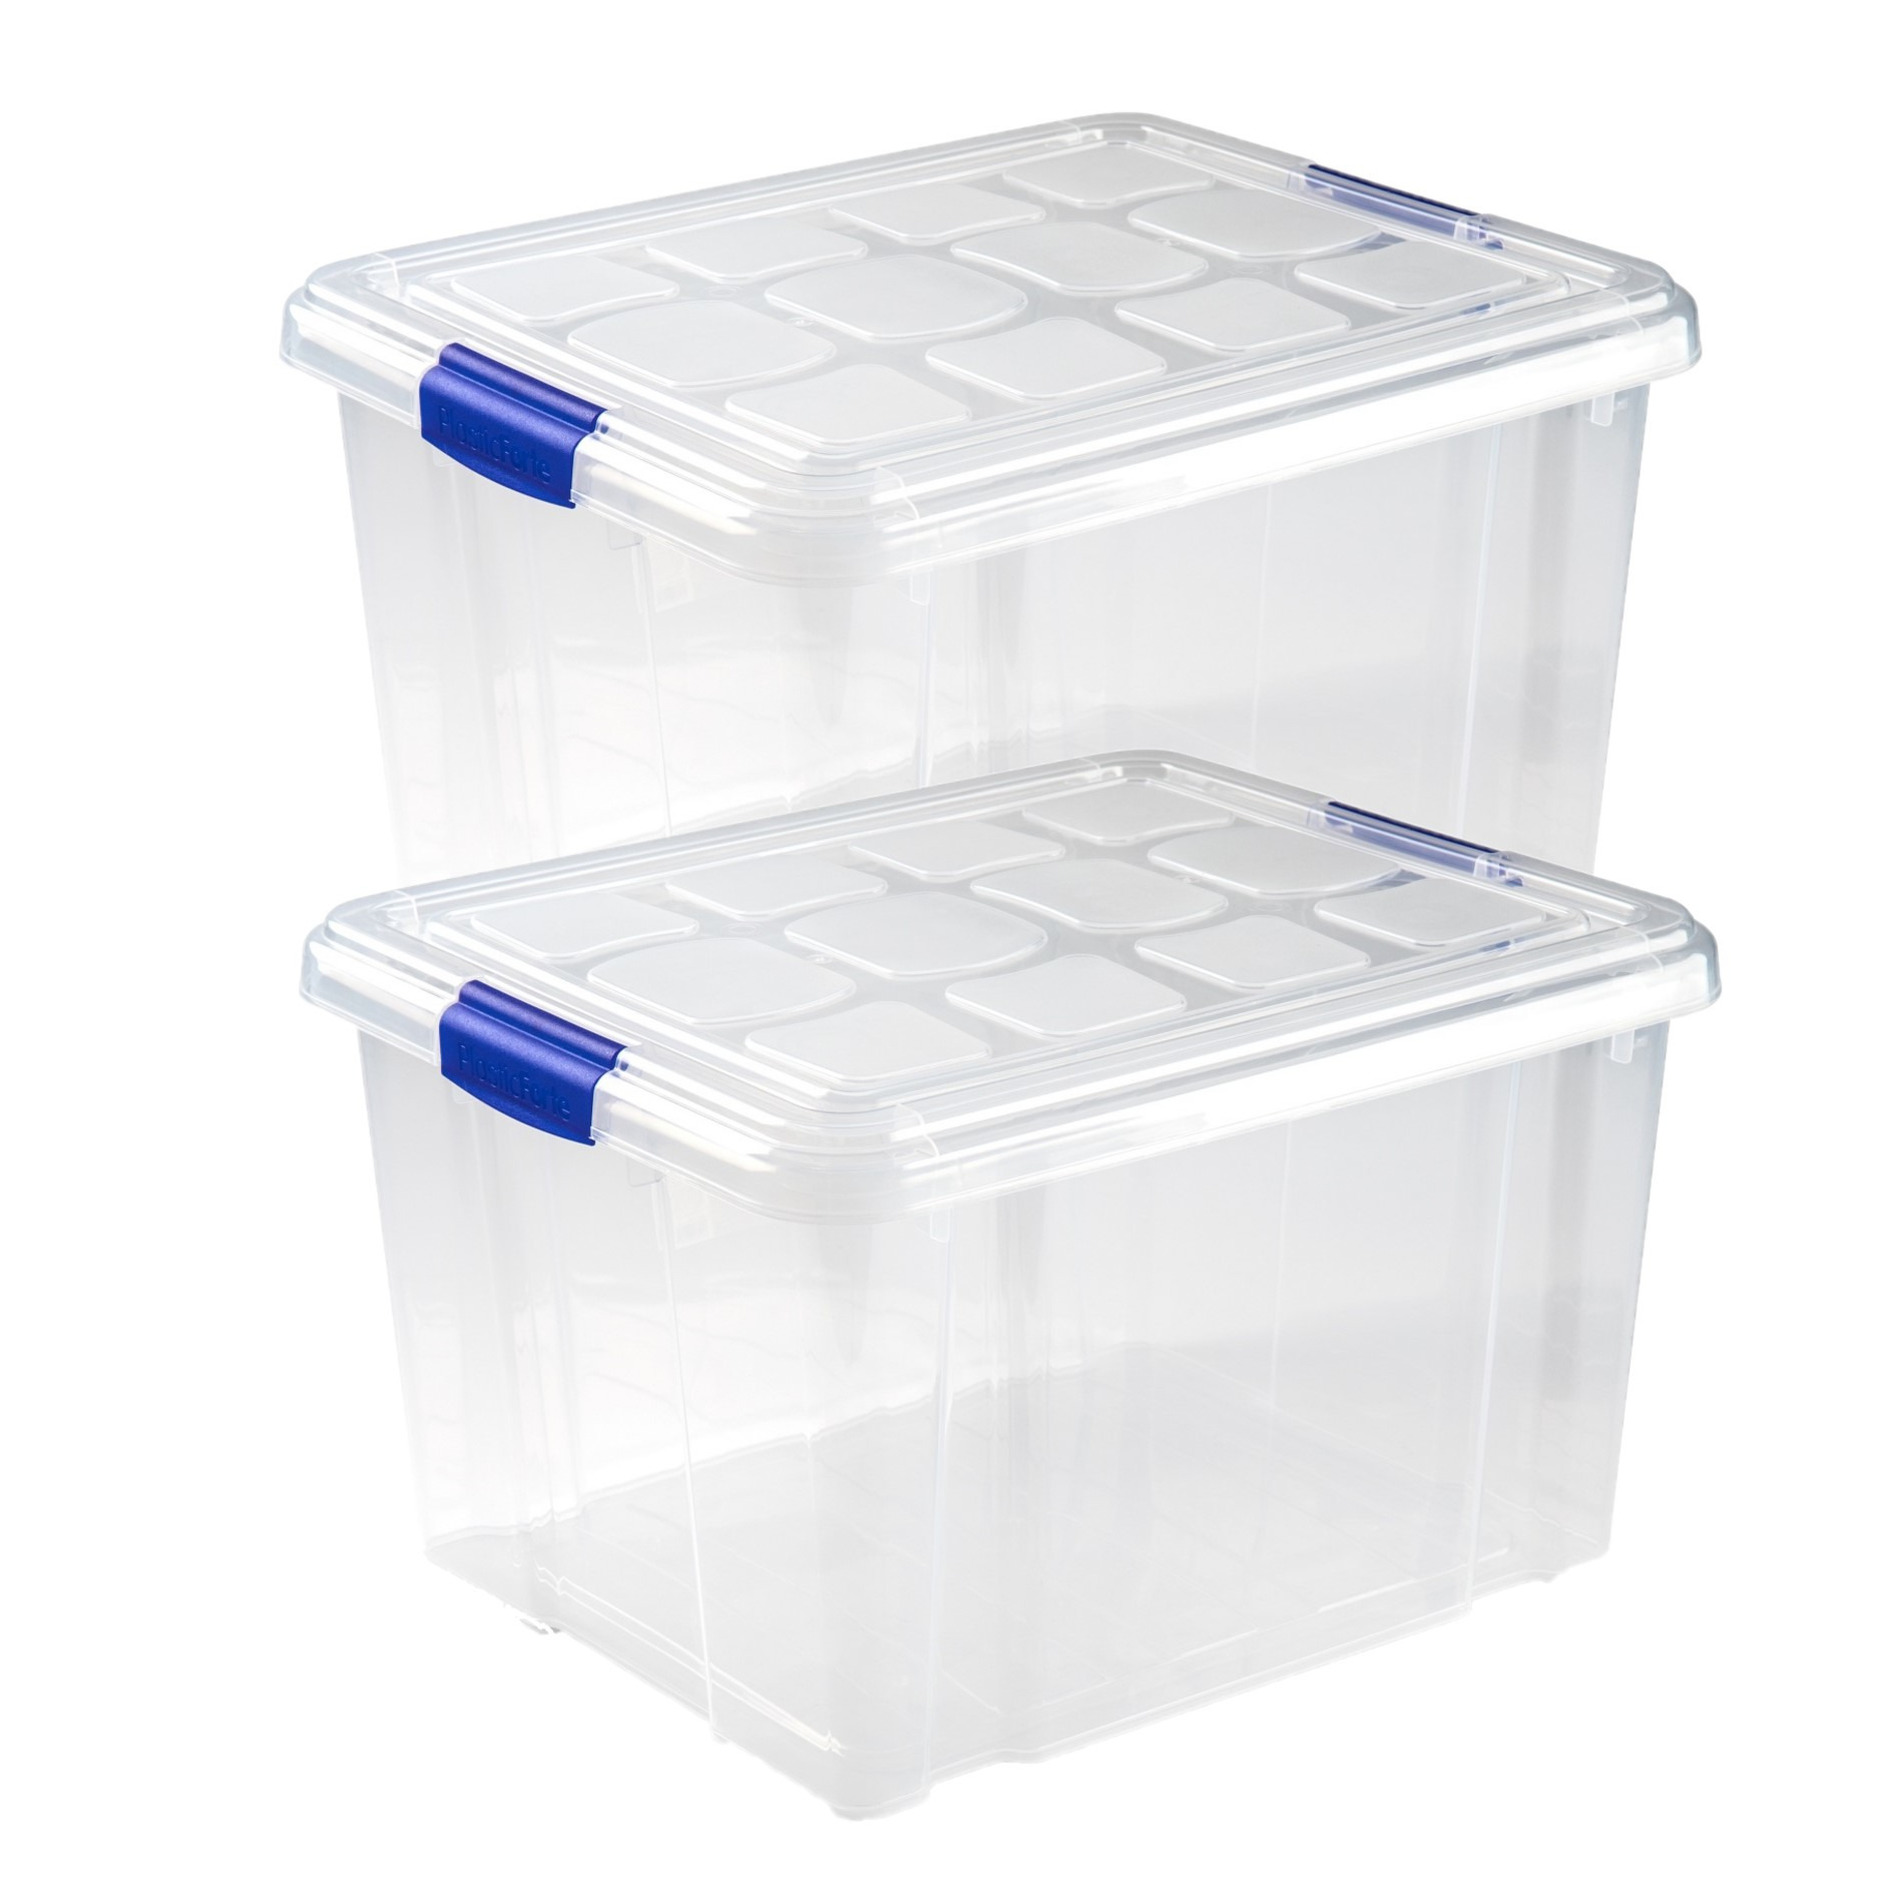 2x stuks opslagboxen-bakken-organizers met deksel 25 liter 42 x 36 x 25 cm transparant